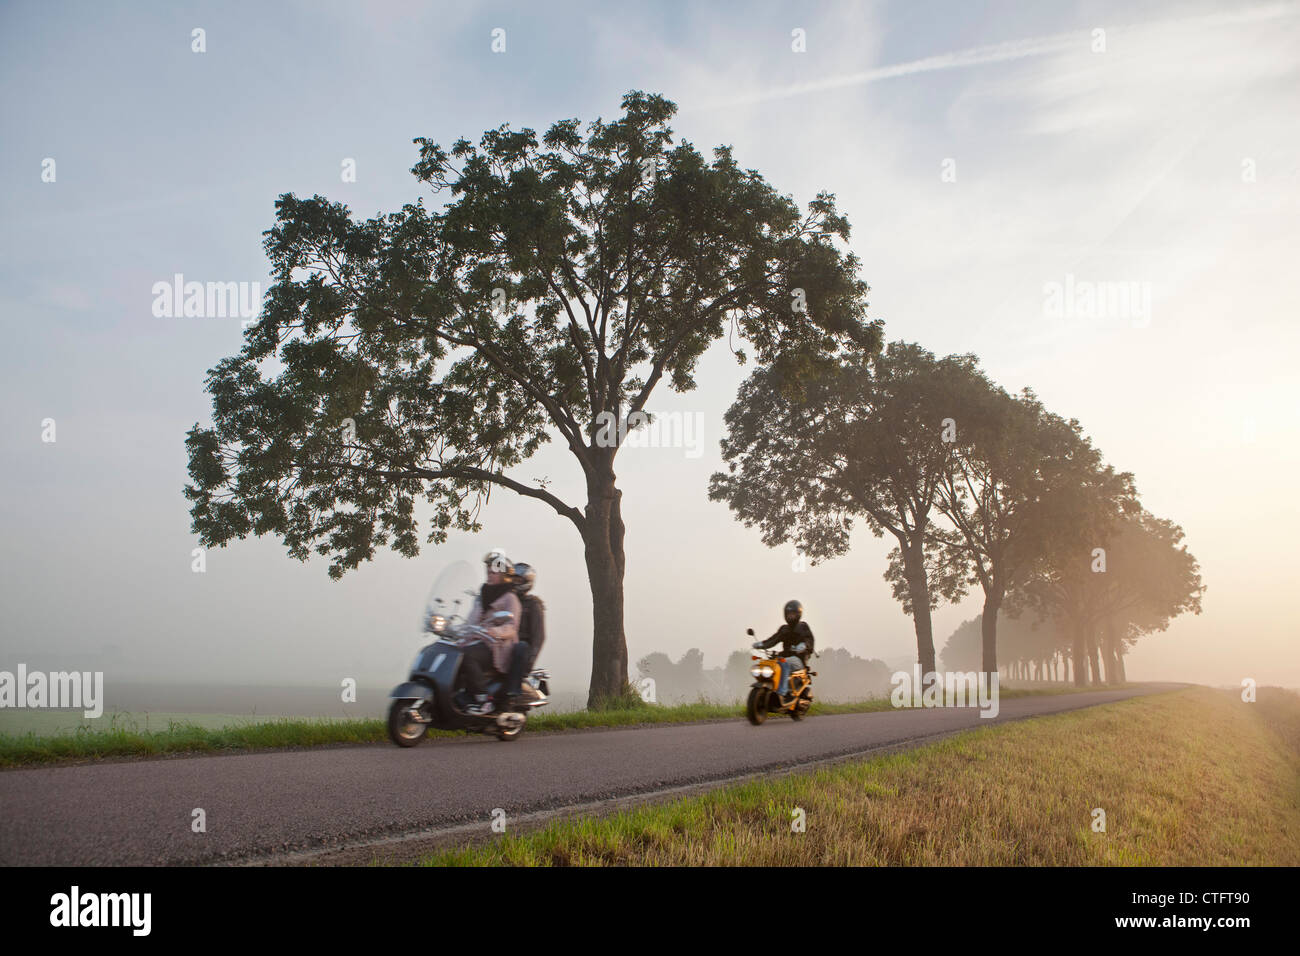 Niederlande, Zuid Beemster, Beemster Polder, Bäume und Straße am Deich, die Polder umgibt. Junge Menschen auf Motorrädern Stockfoto